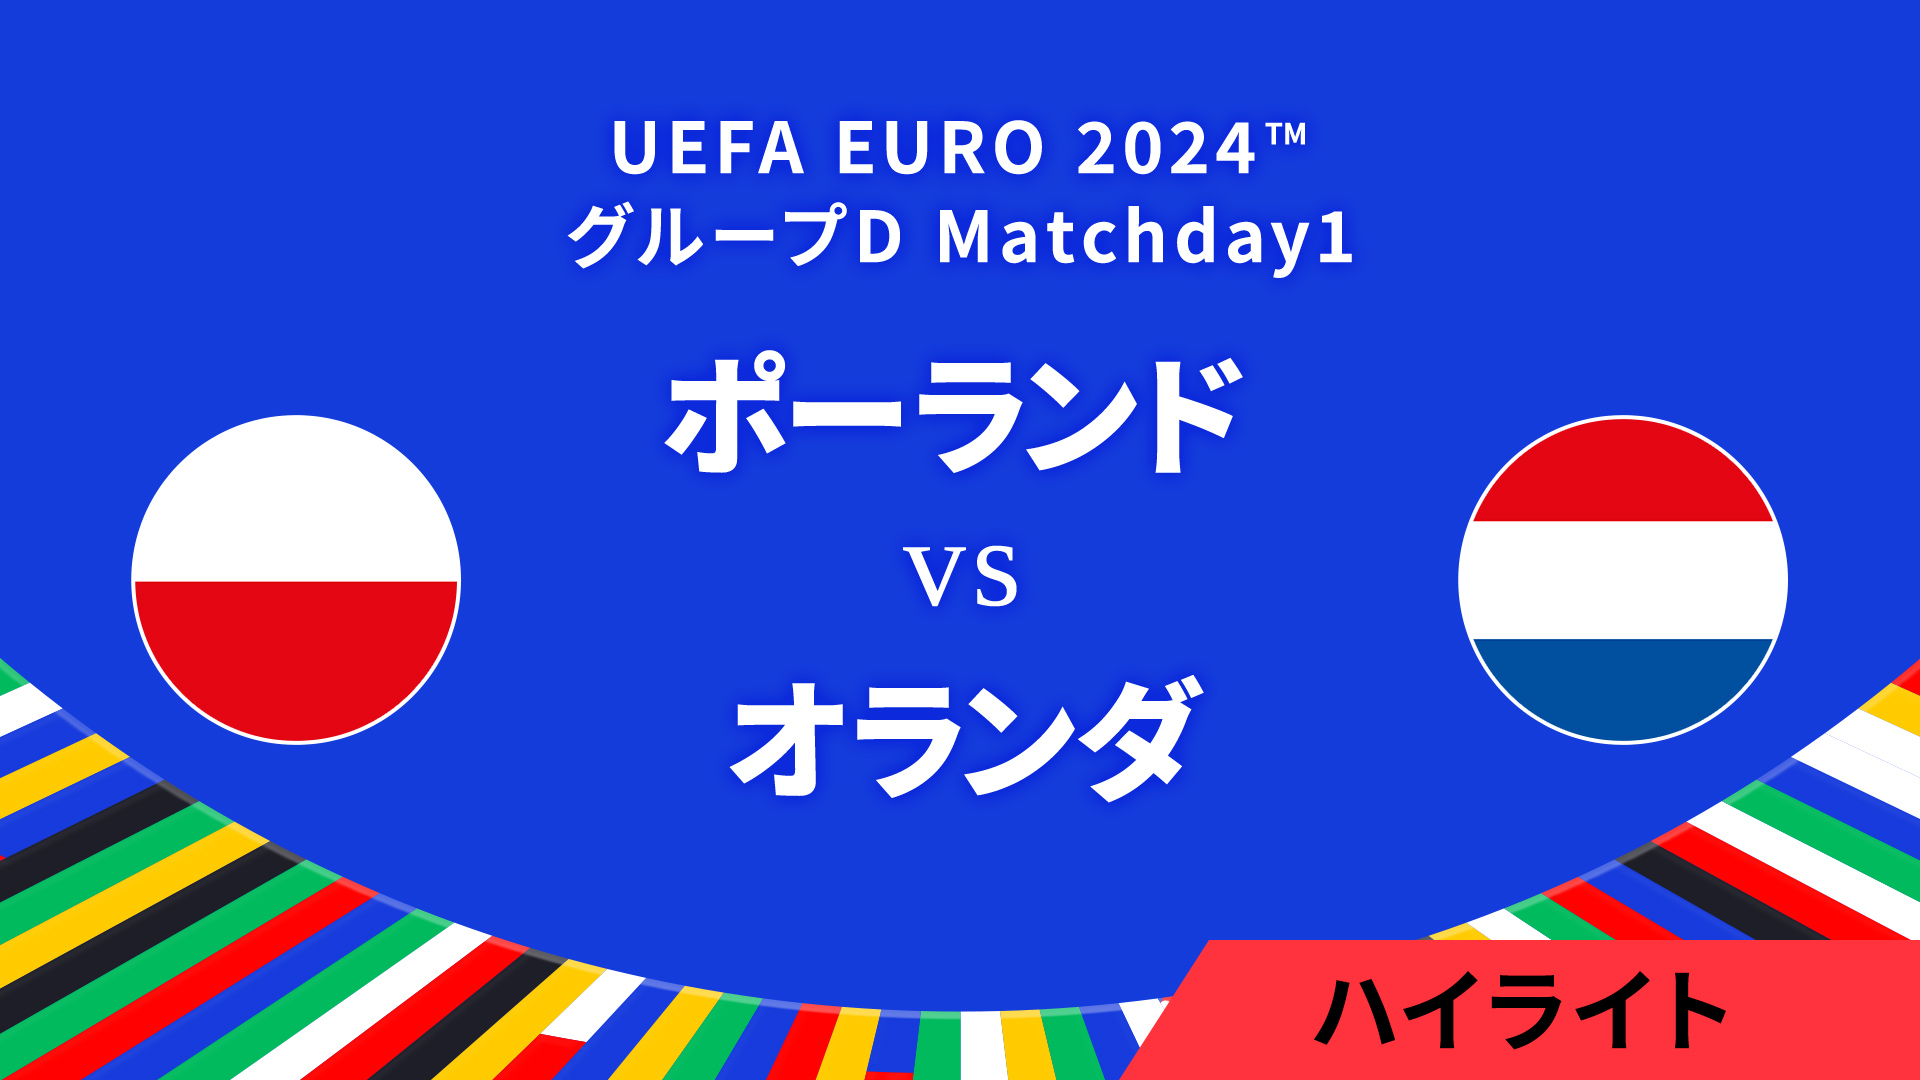 ポーランド vs オランダ │グループD MD1 3分ハイライト／UEFA EURO 2024™ サッカー欧州選手権